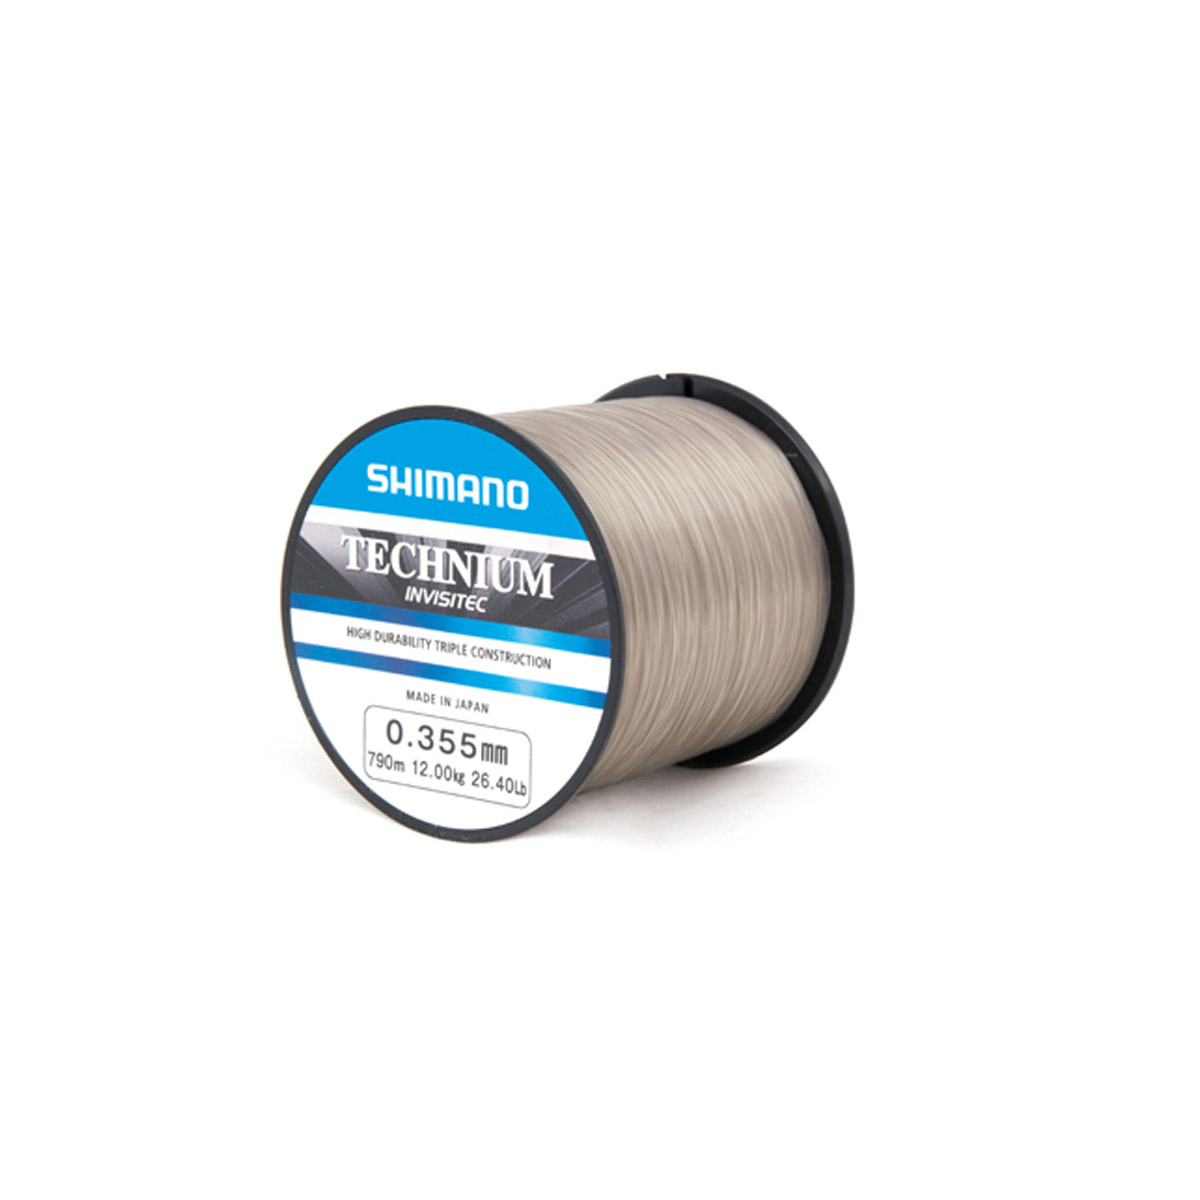 Shimano Technium Invisitec -  0.305 mm